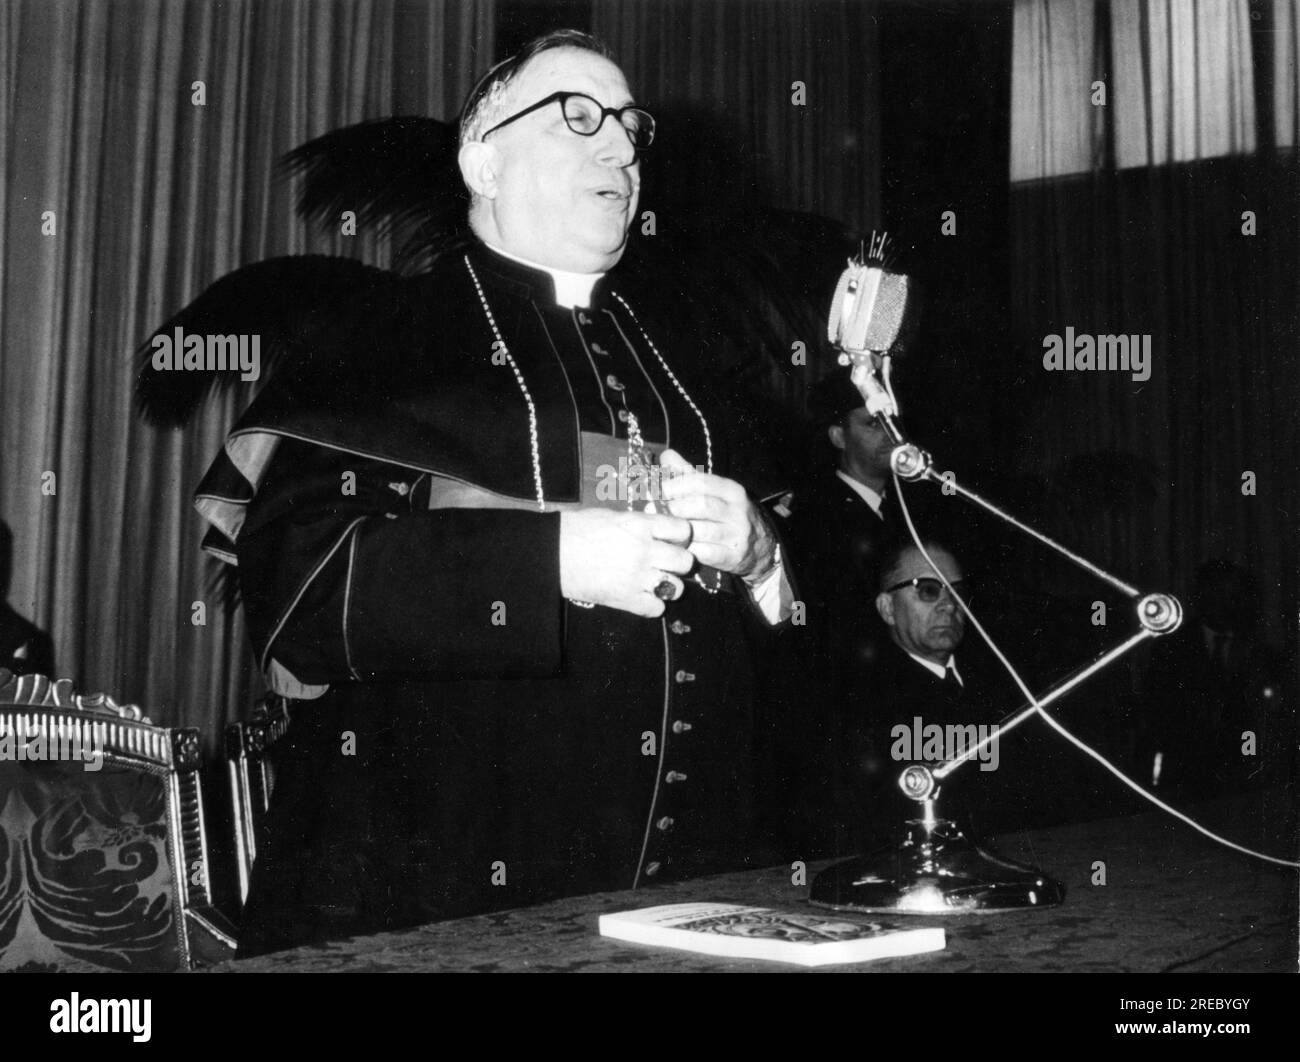 Traglia, Luigi, 3.4.1895 - 22.11.1977, ecclésiastique catholique italien, délirant un discours, 1960S, INFO-AUTORISATION-DROITS-SUPPLÉMENTAIRES-NON-DISPONIBLE Banque D'Images